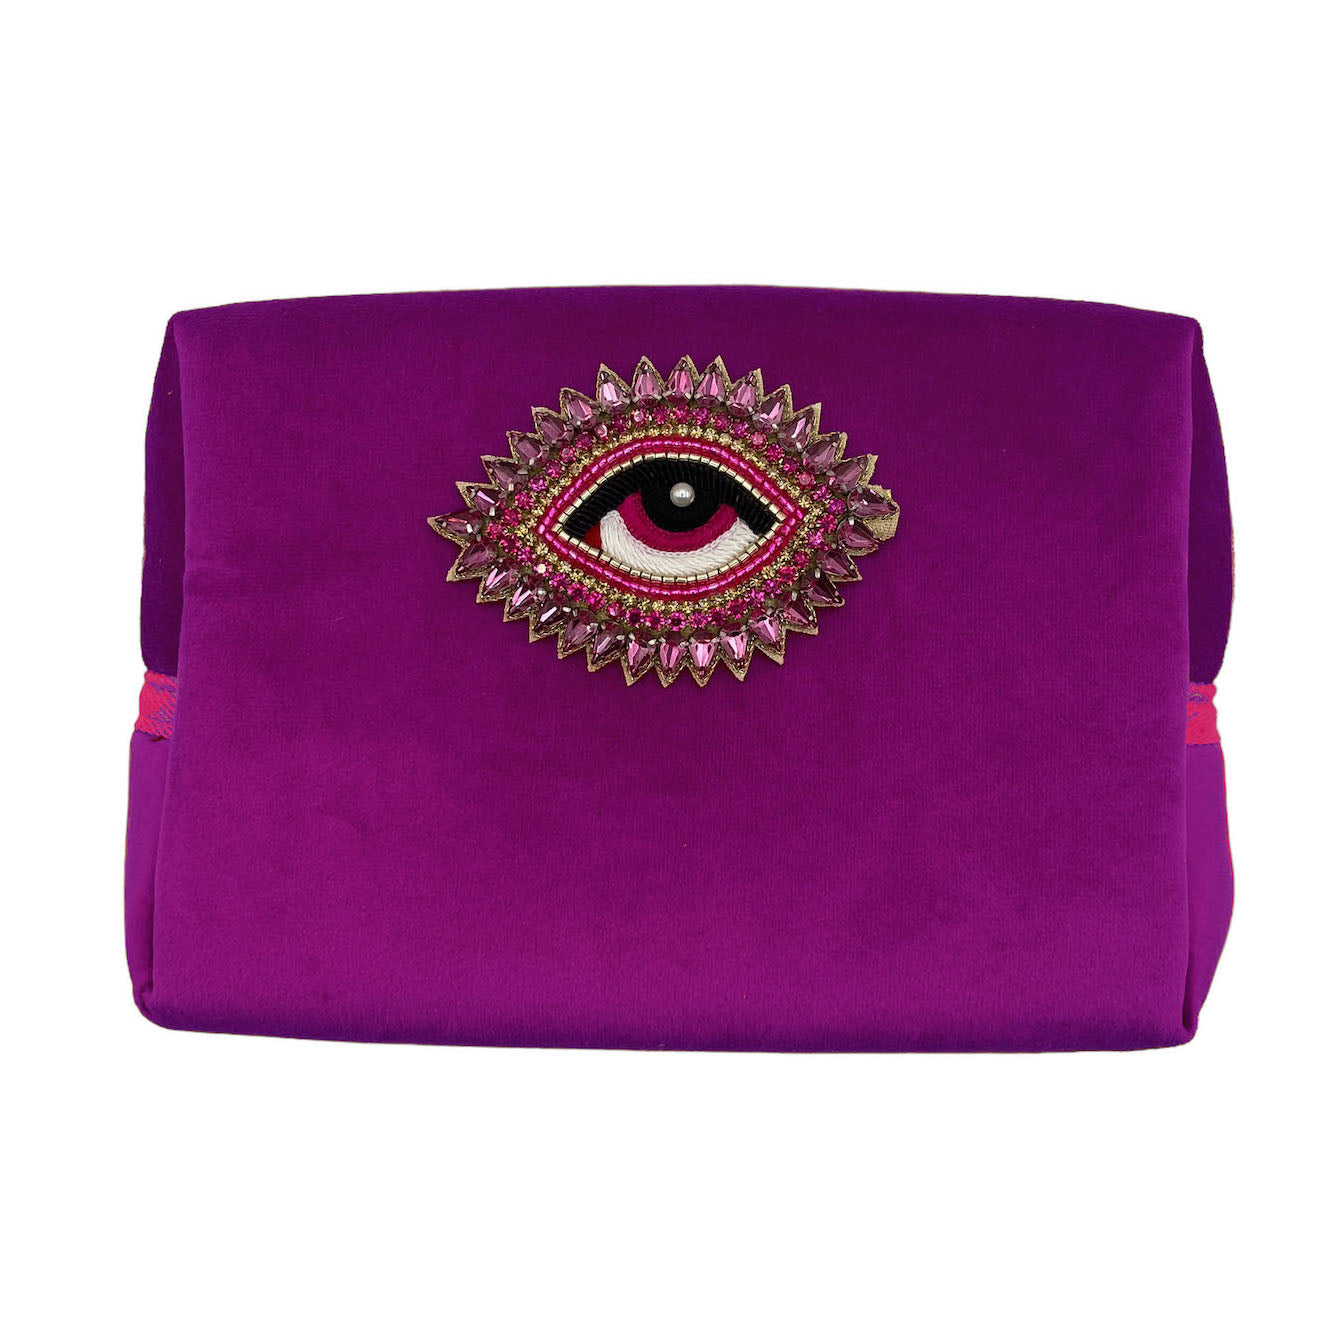 Fuchsia Velvet Makeup Bag w/ Detachable Rose Eye Pin